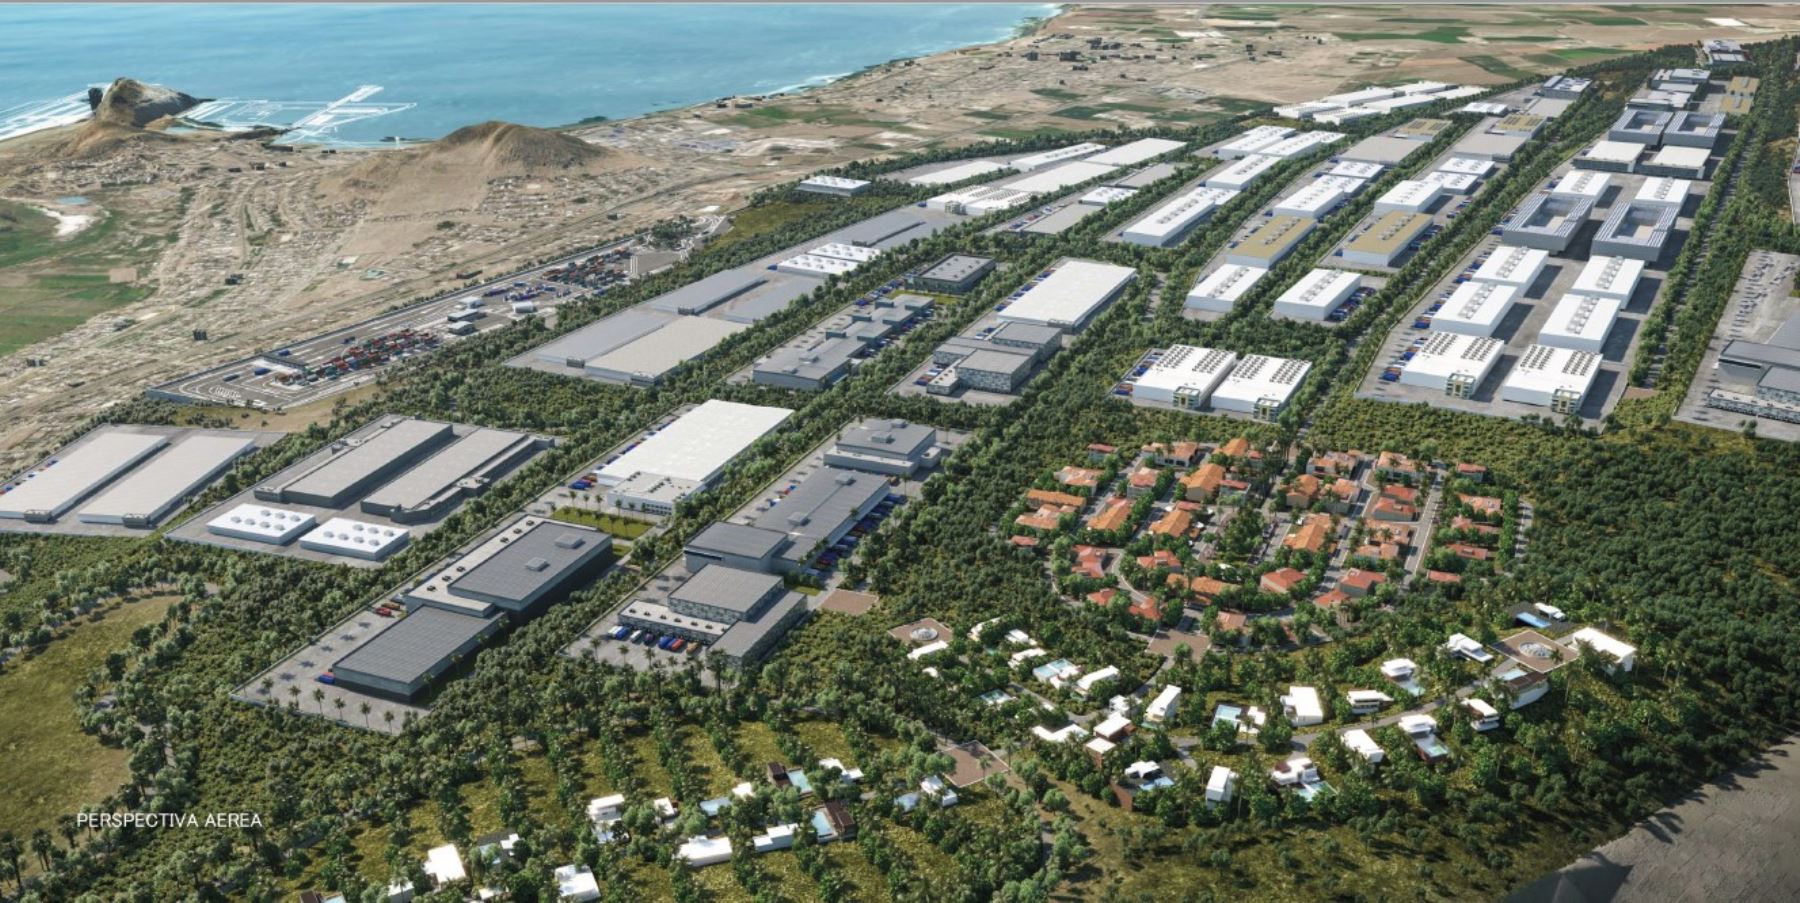 Nuevo parque industrial, Chancay Park,  aumenta las expectativas de crecimiento económico y desarrollo tecnológico.